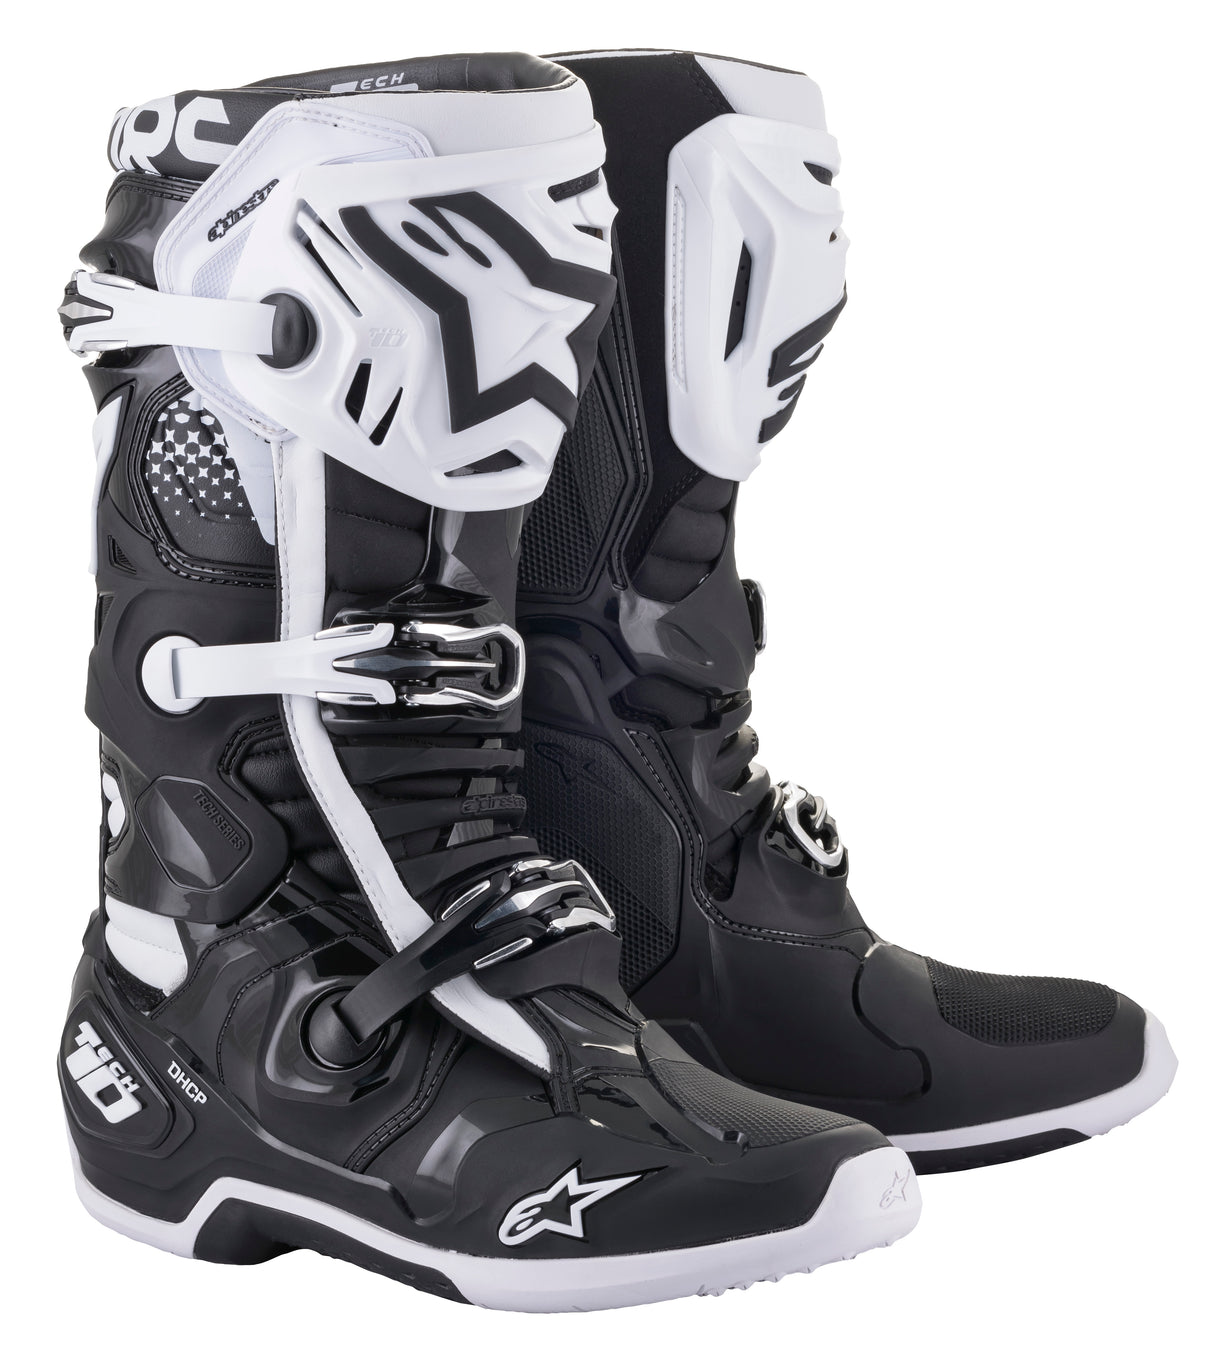 Tech 10 Boots Black/White Sz 07